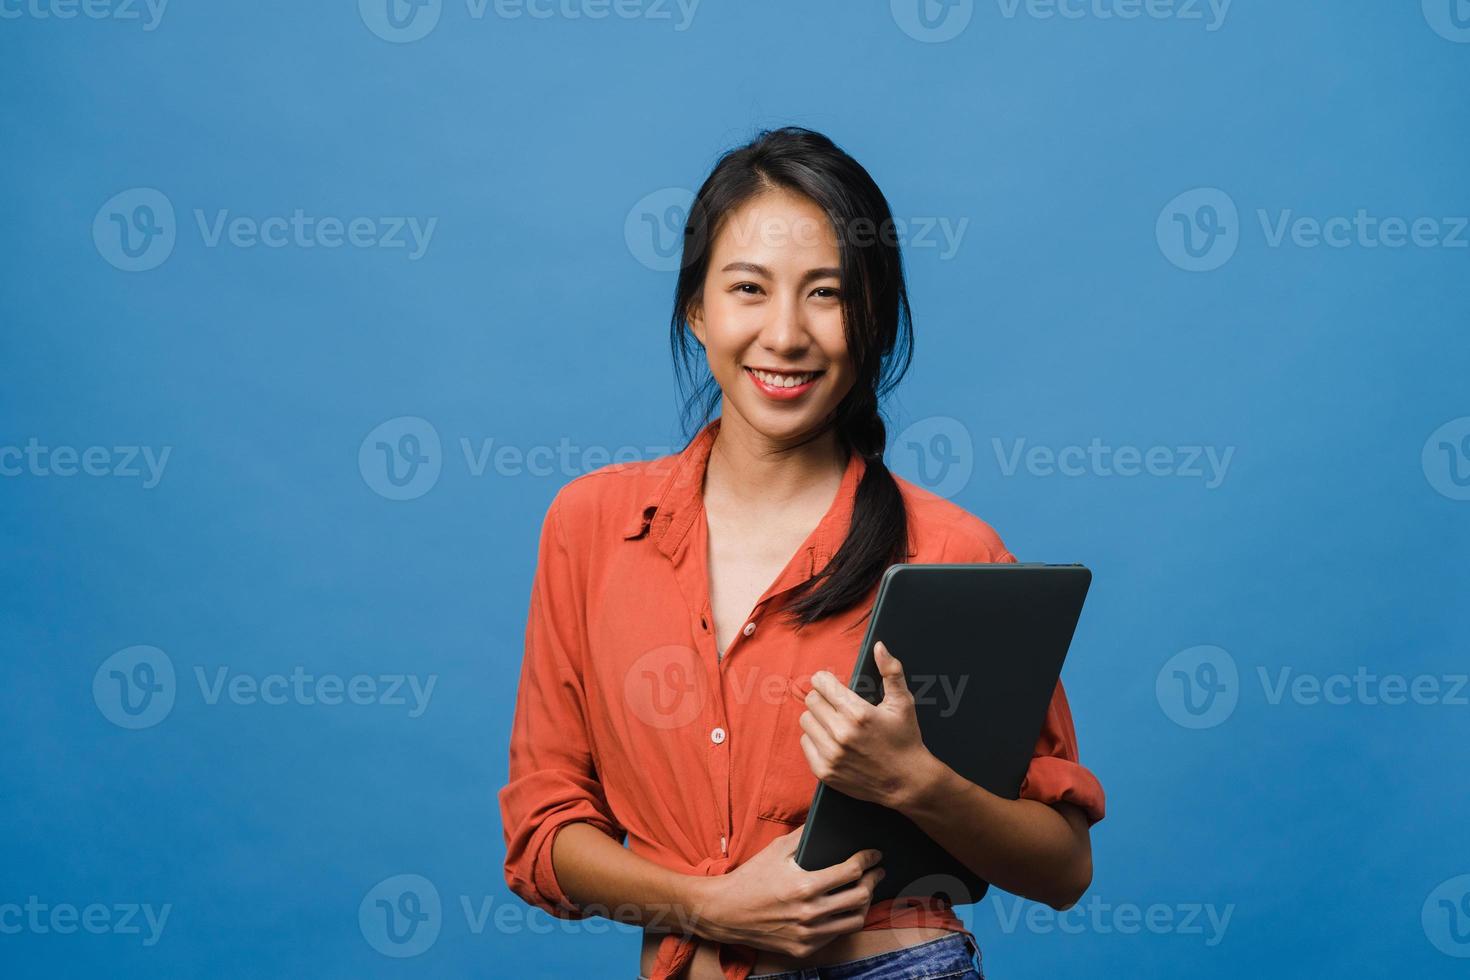 surpris la jeune femme asiatique tient un ordinateur portable avec une expression positive, sourit largement, vêtue de vêtements décontractés et regarde la caméra sur fond bleu. heureuse adorable femme heureuse se réjouit du succès. photo